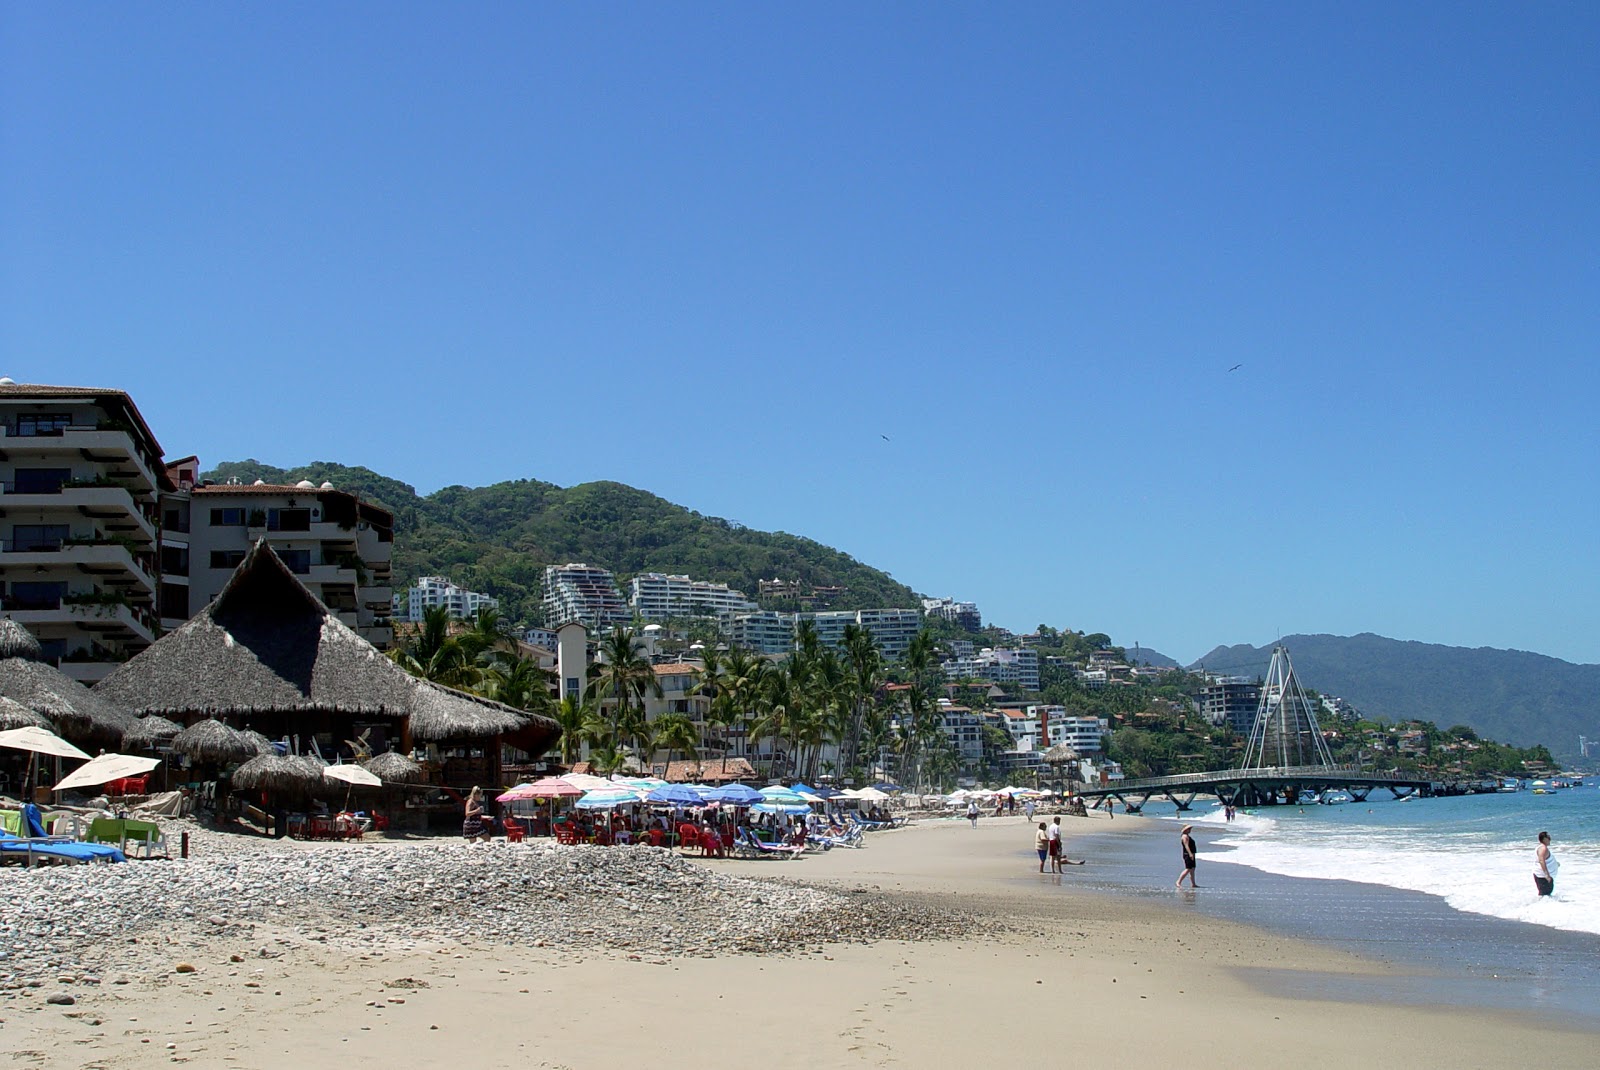 Fotografija Olas Altas beach priljubljeno mesto med poznavalci sprostitve